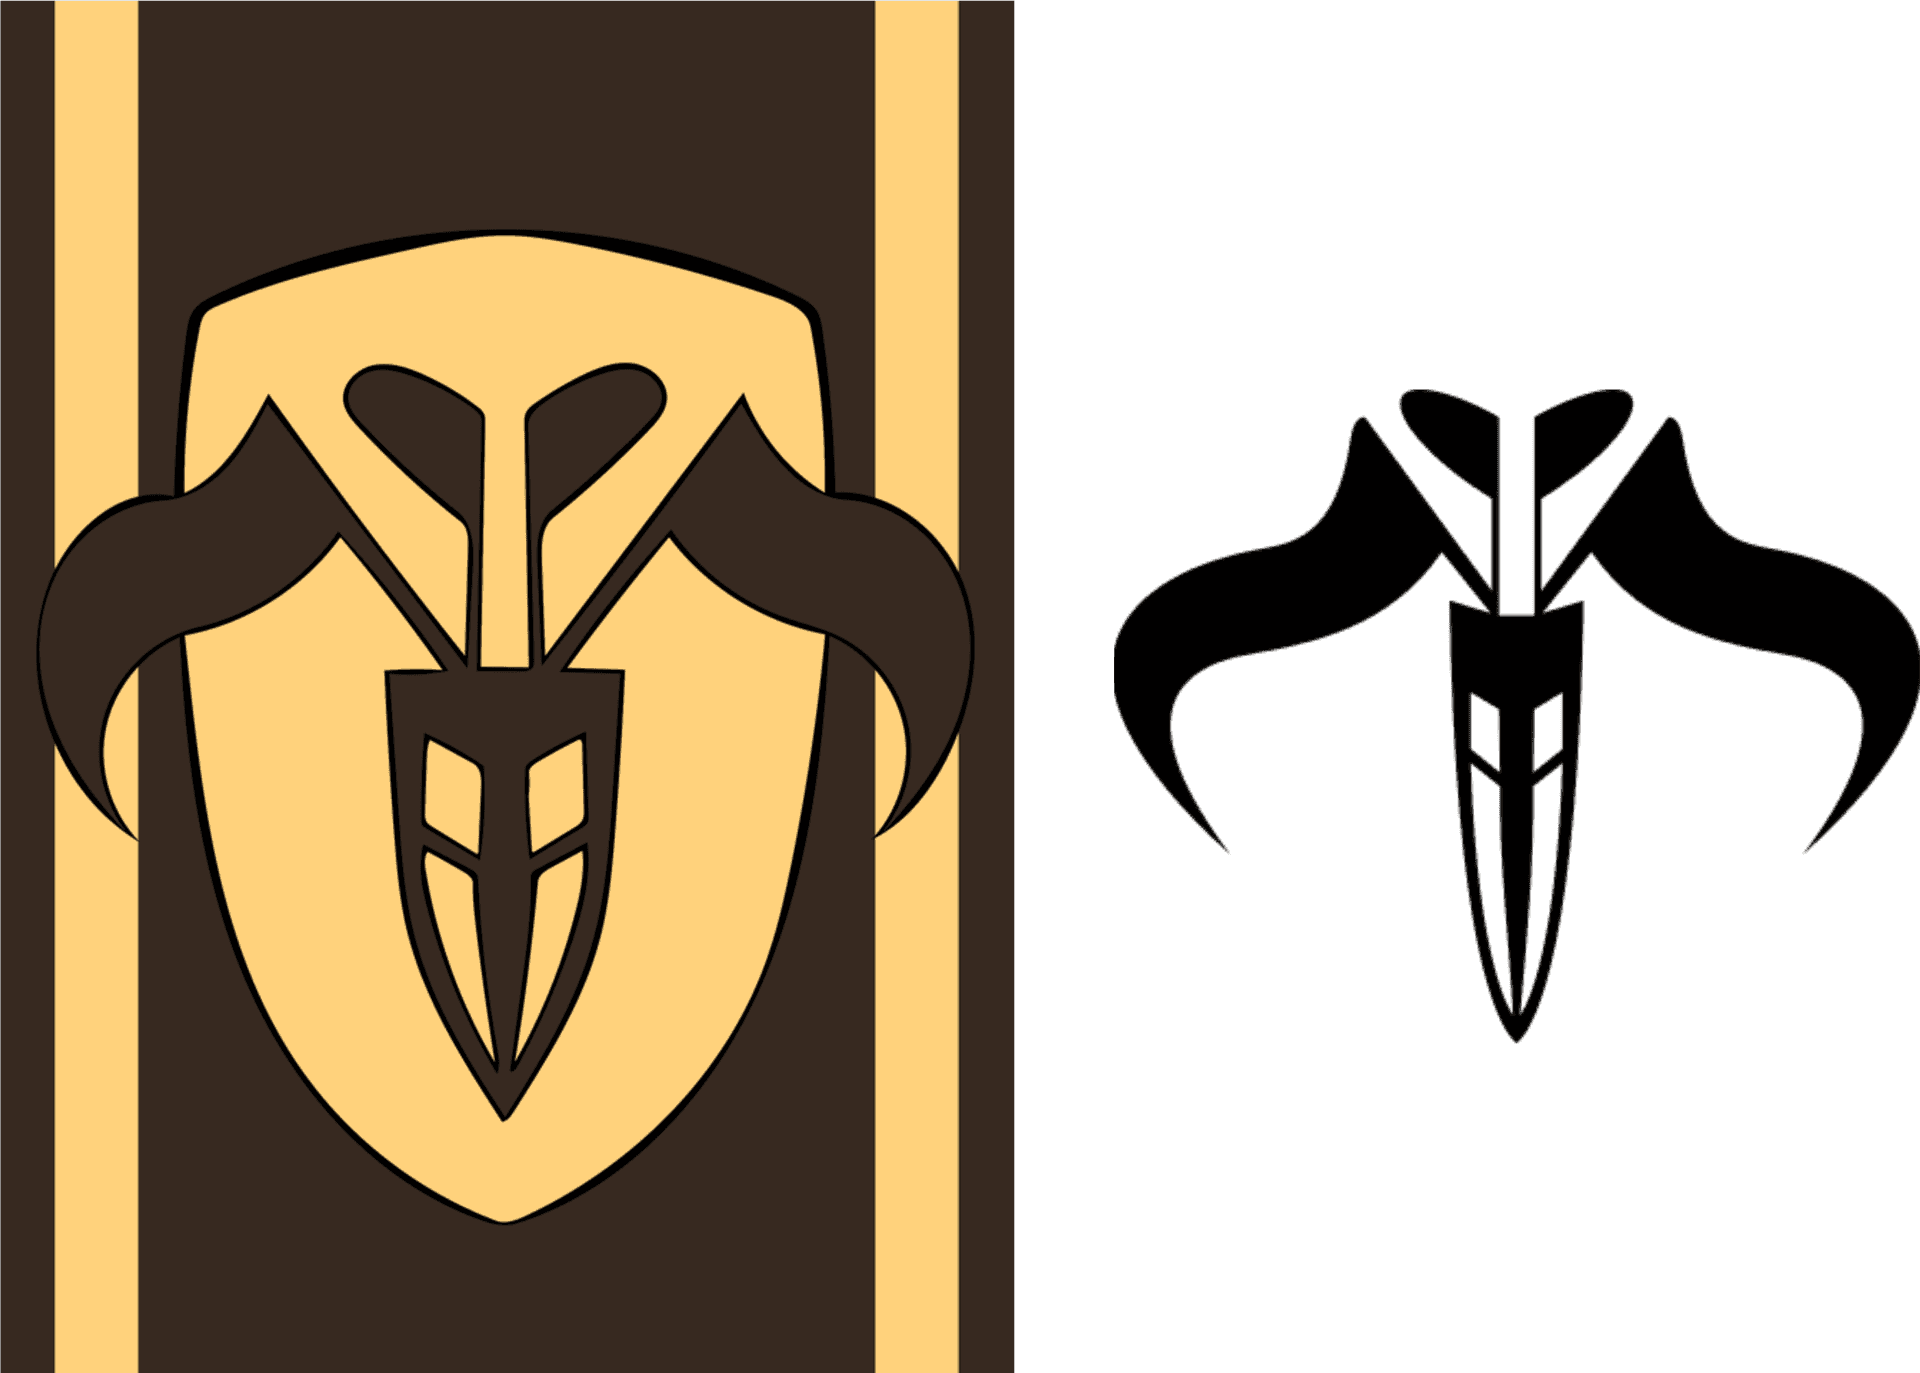 Mandalorian Crests Comparison PNG image